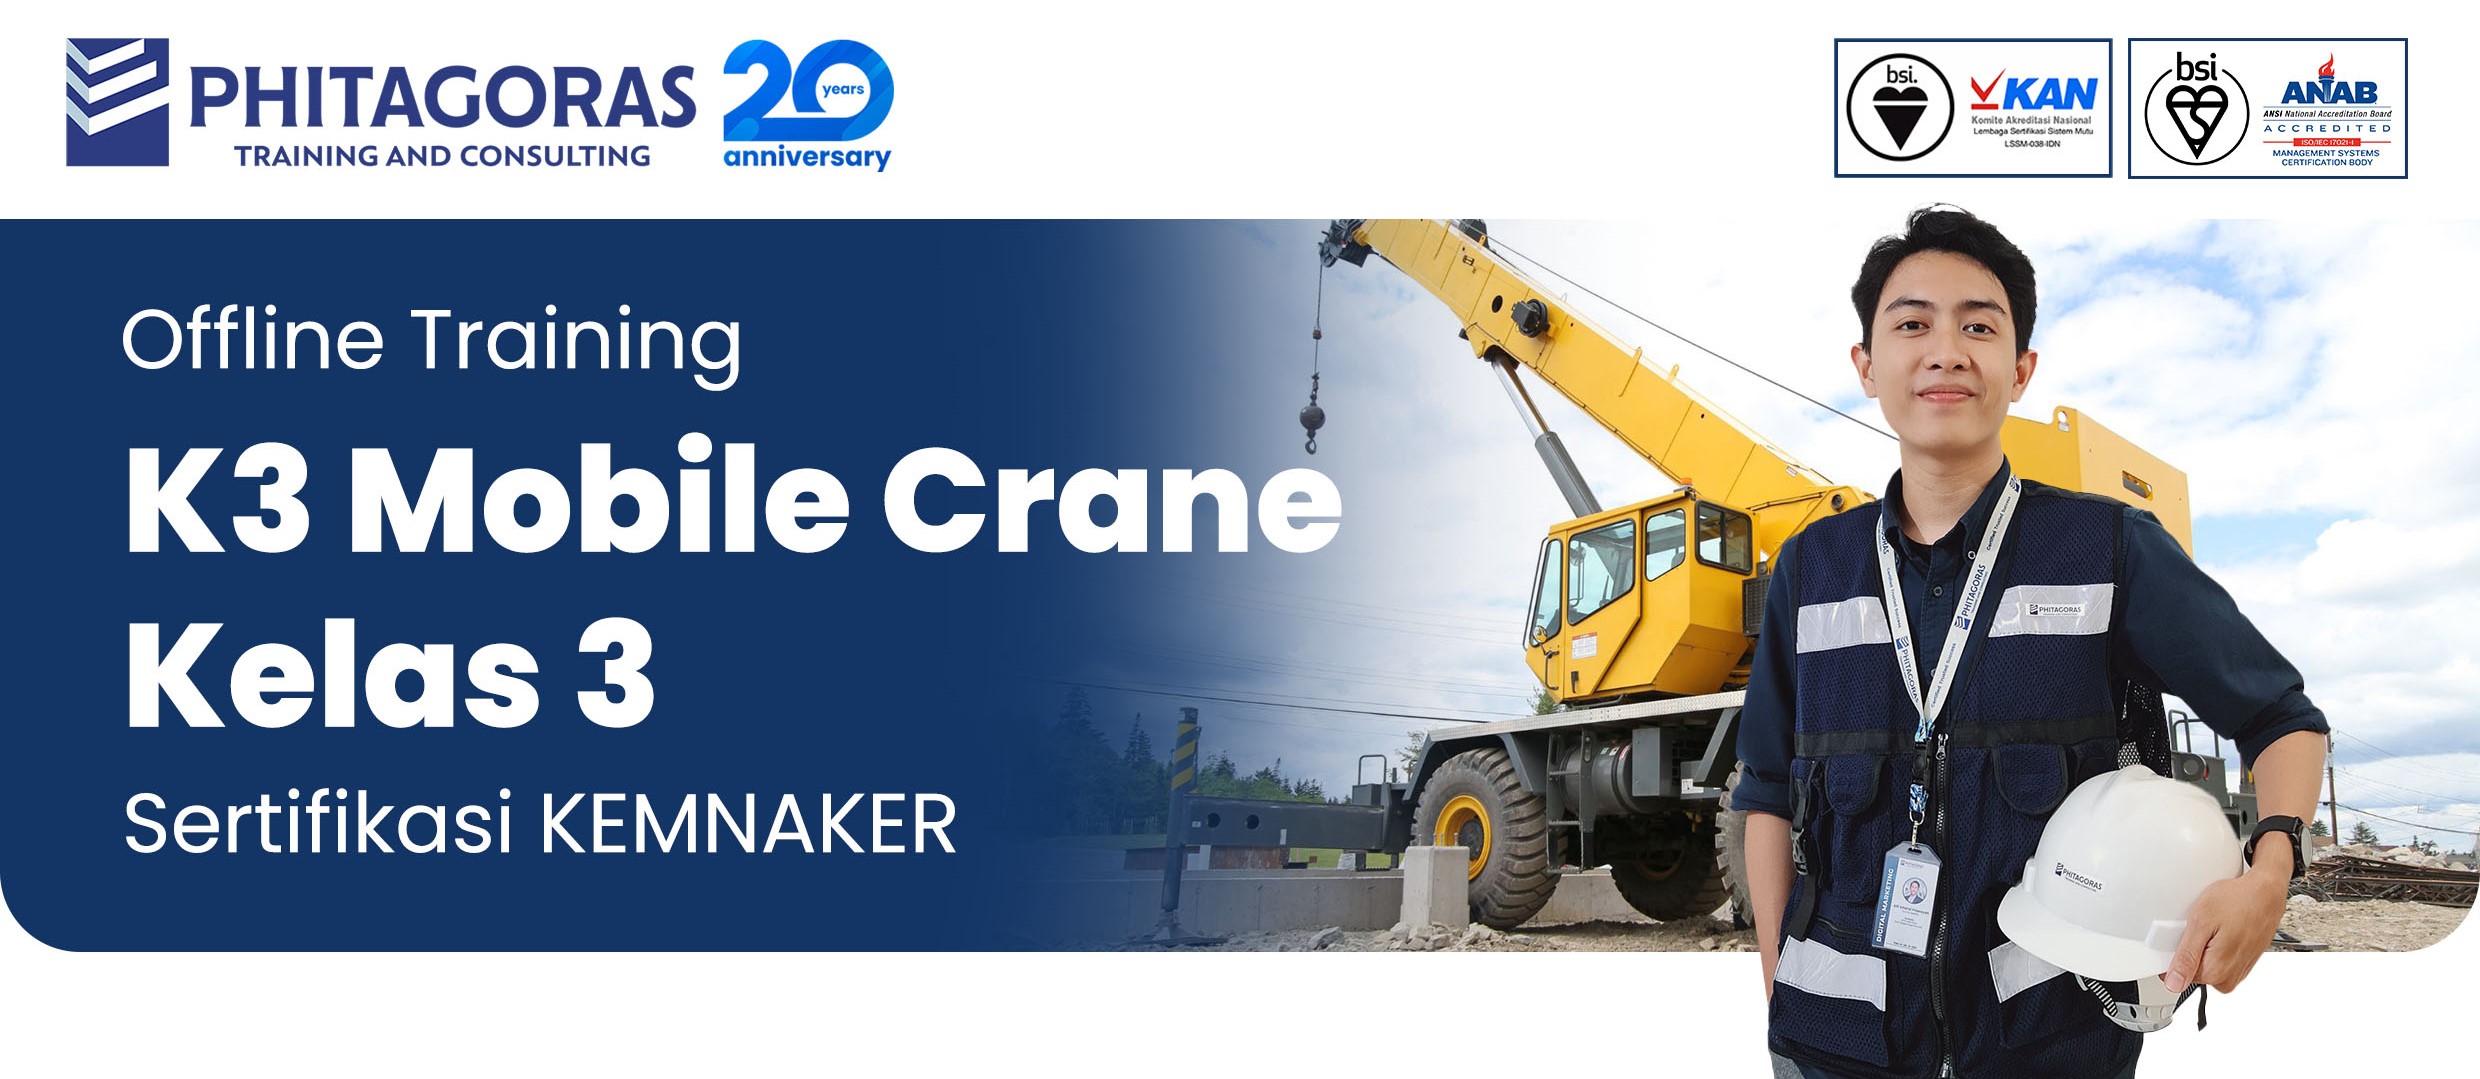 K3 Mobile Crane Kelas 3